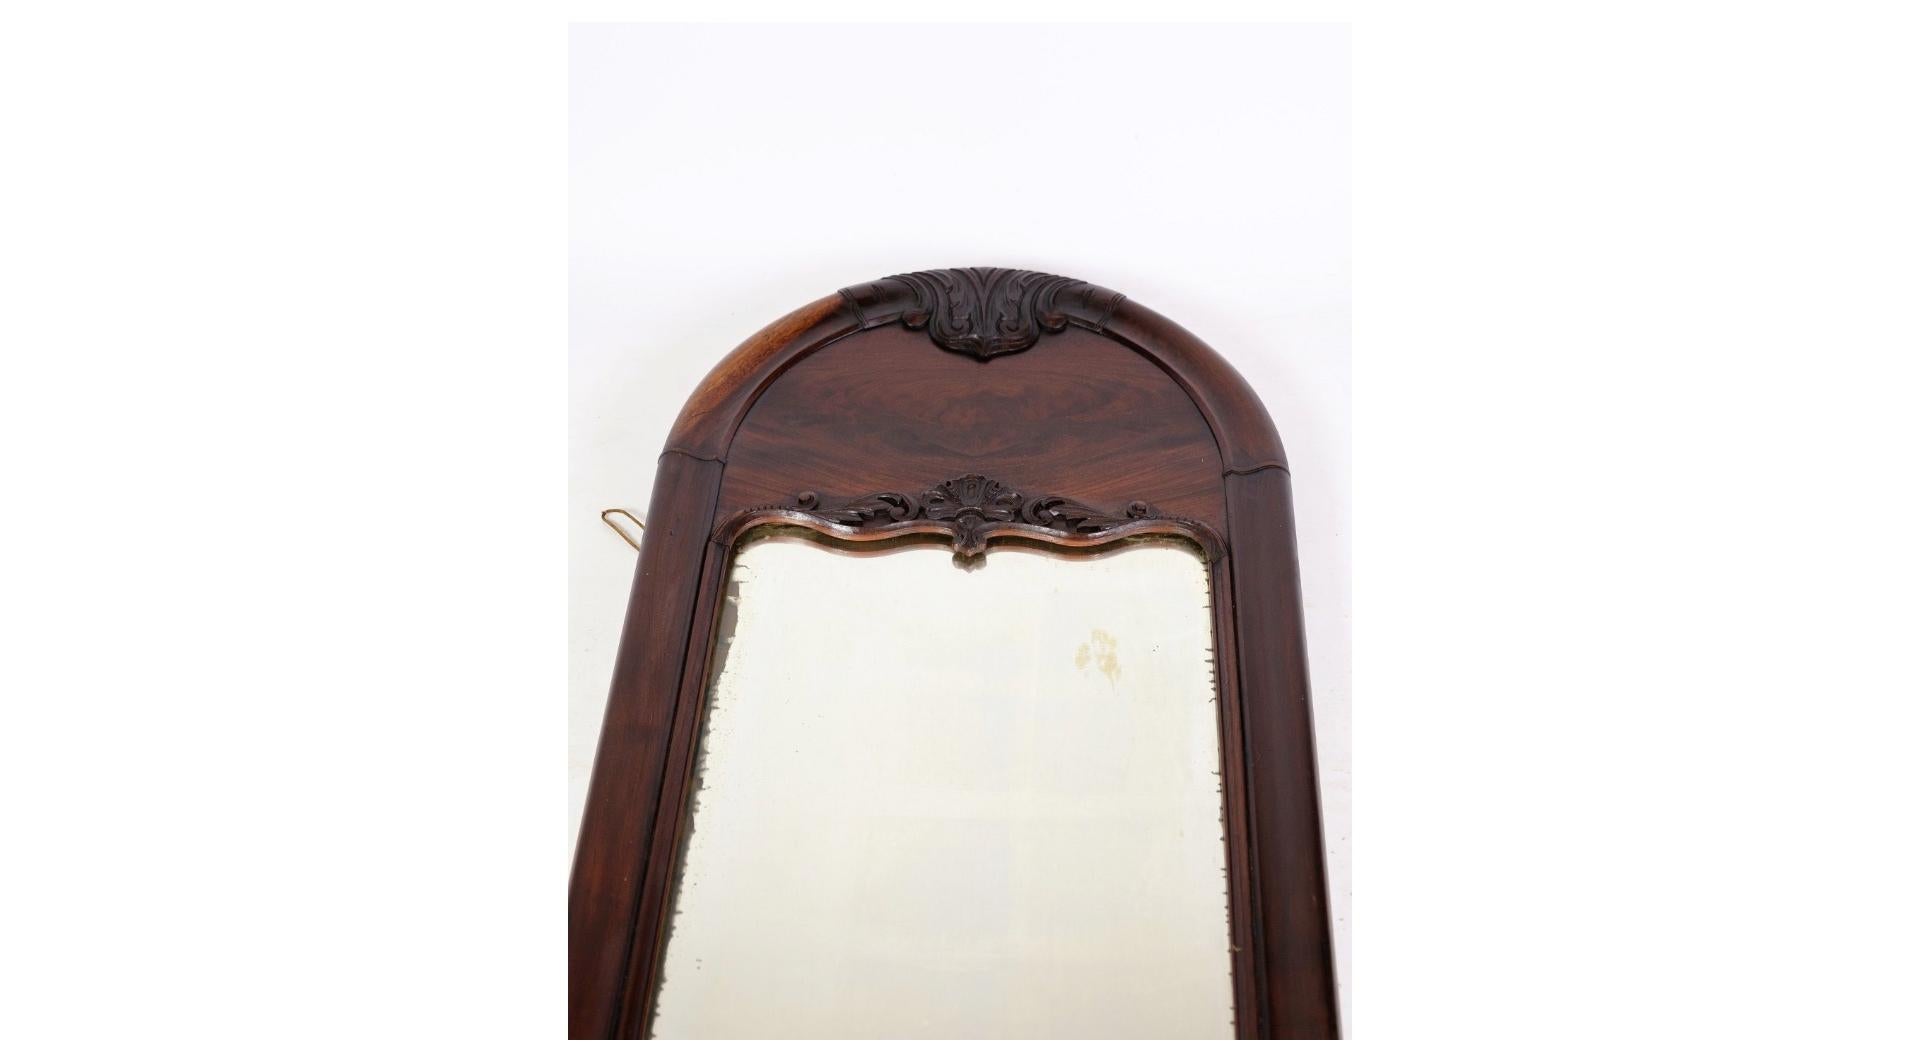 Der antike Mahagonispiegel Christian VIII. aus den 1860er Jahren ist ein bezauberndes Stück Möbelgeschichte, das wahre Eleganz und zeitlose Schönheit ausstrahlt. Dieser Spiegel steht für das handwerkliche Erbe und die ästhetische Raffinesse der